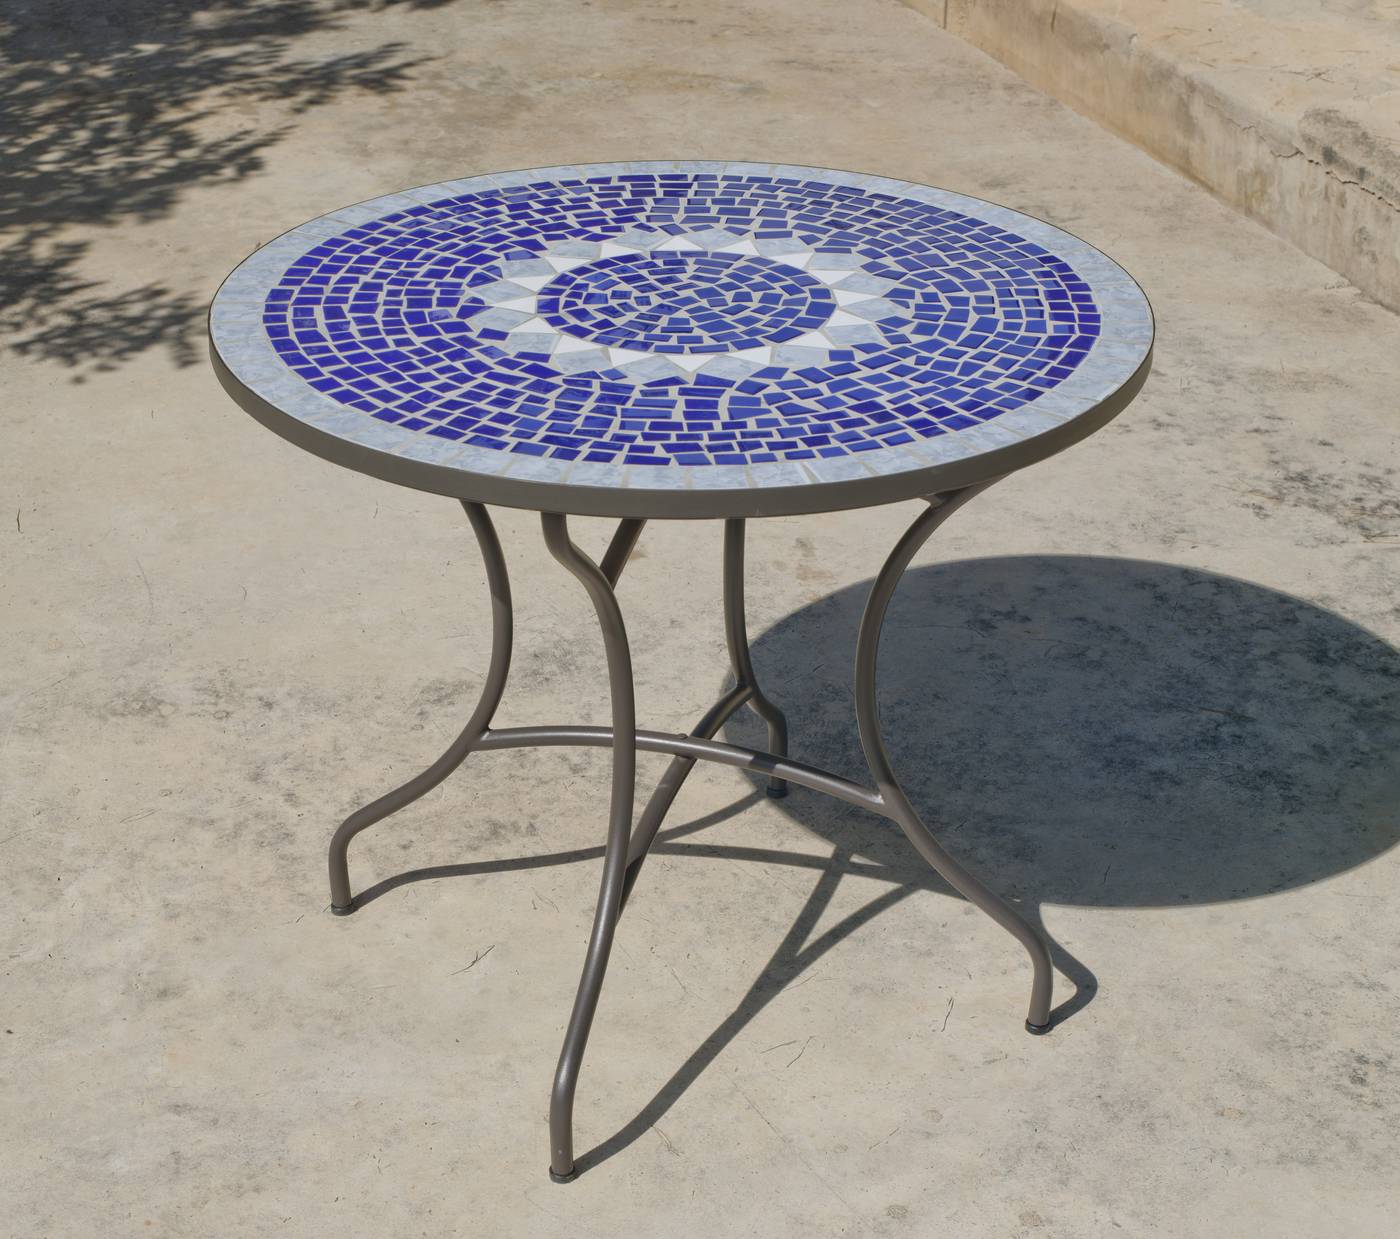 Set Mosaico Ródano-Ampurias 90-4 - Conjunto para jardín color gris antracita: 1 mesa de forja con panel mosaico circular de 90 cm. + 4 sillones de ratán sintético